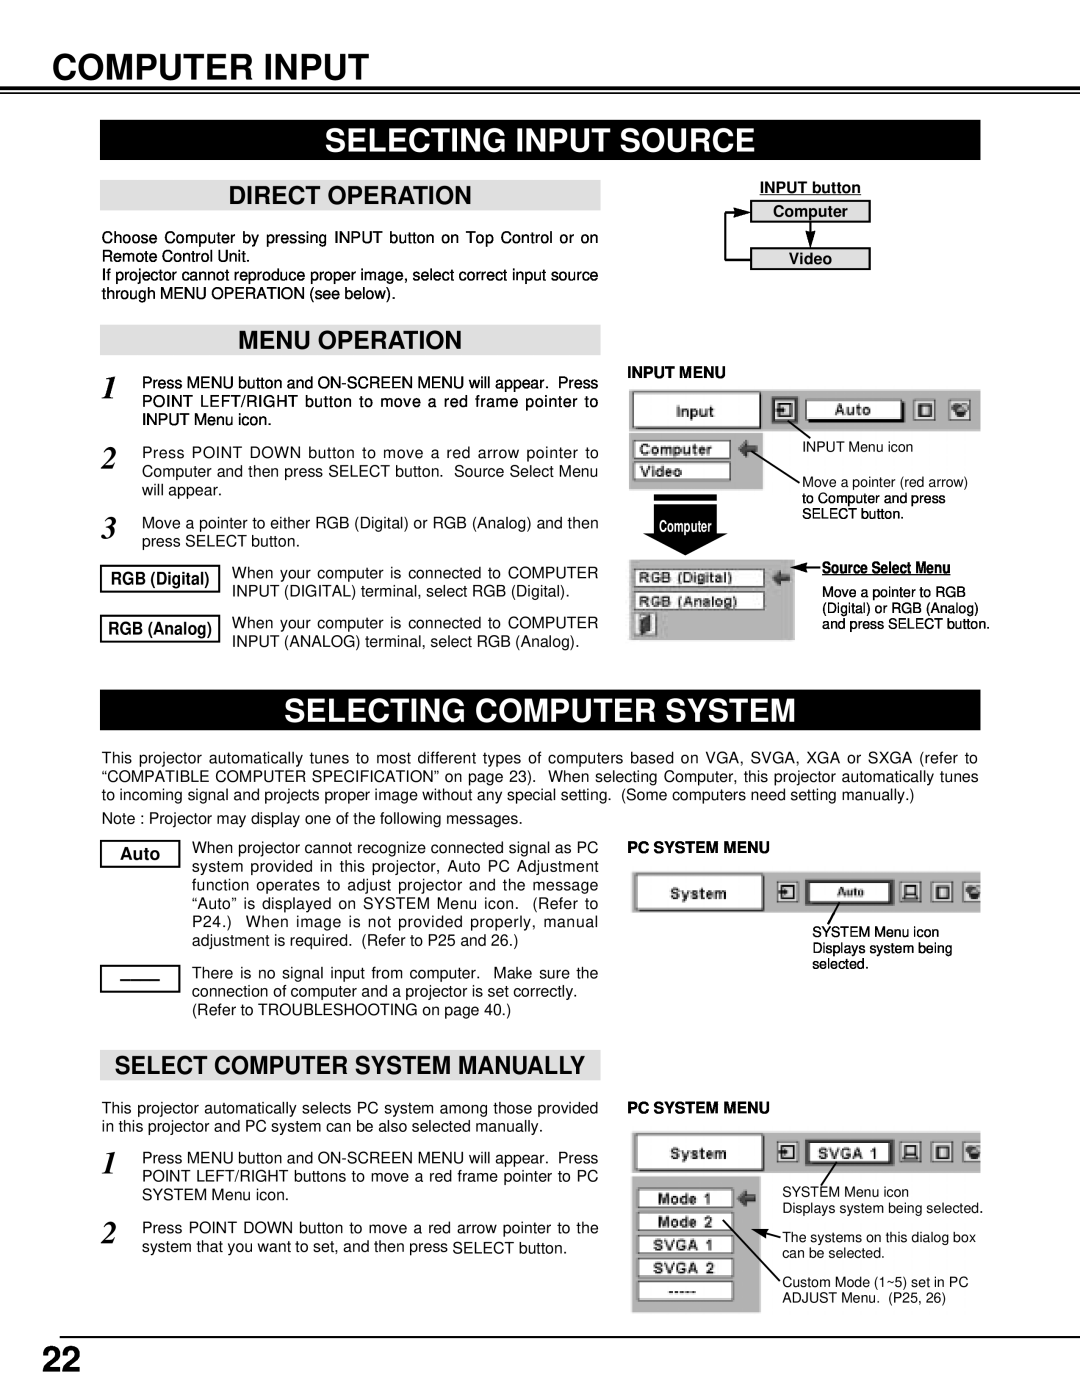 Eiki LC-XNB3W Computer Input, Selecting Input Source, Selecting Computer System, Select Computer System Manually 